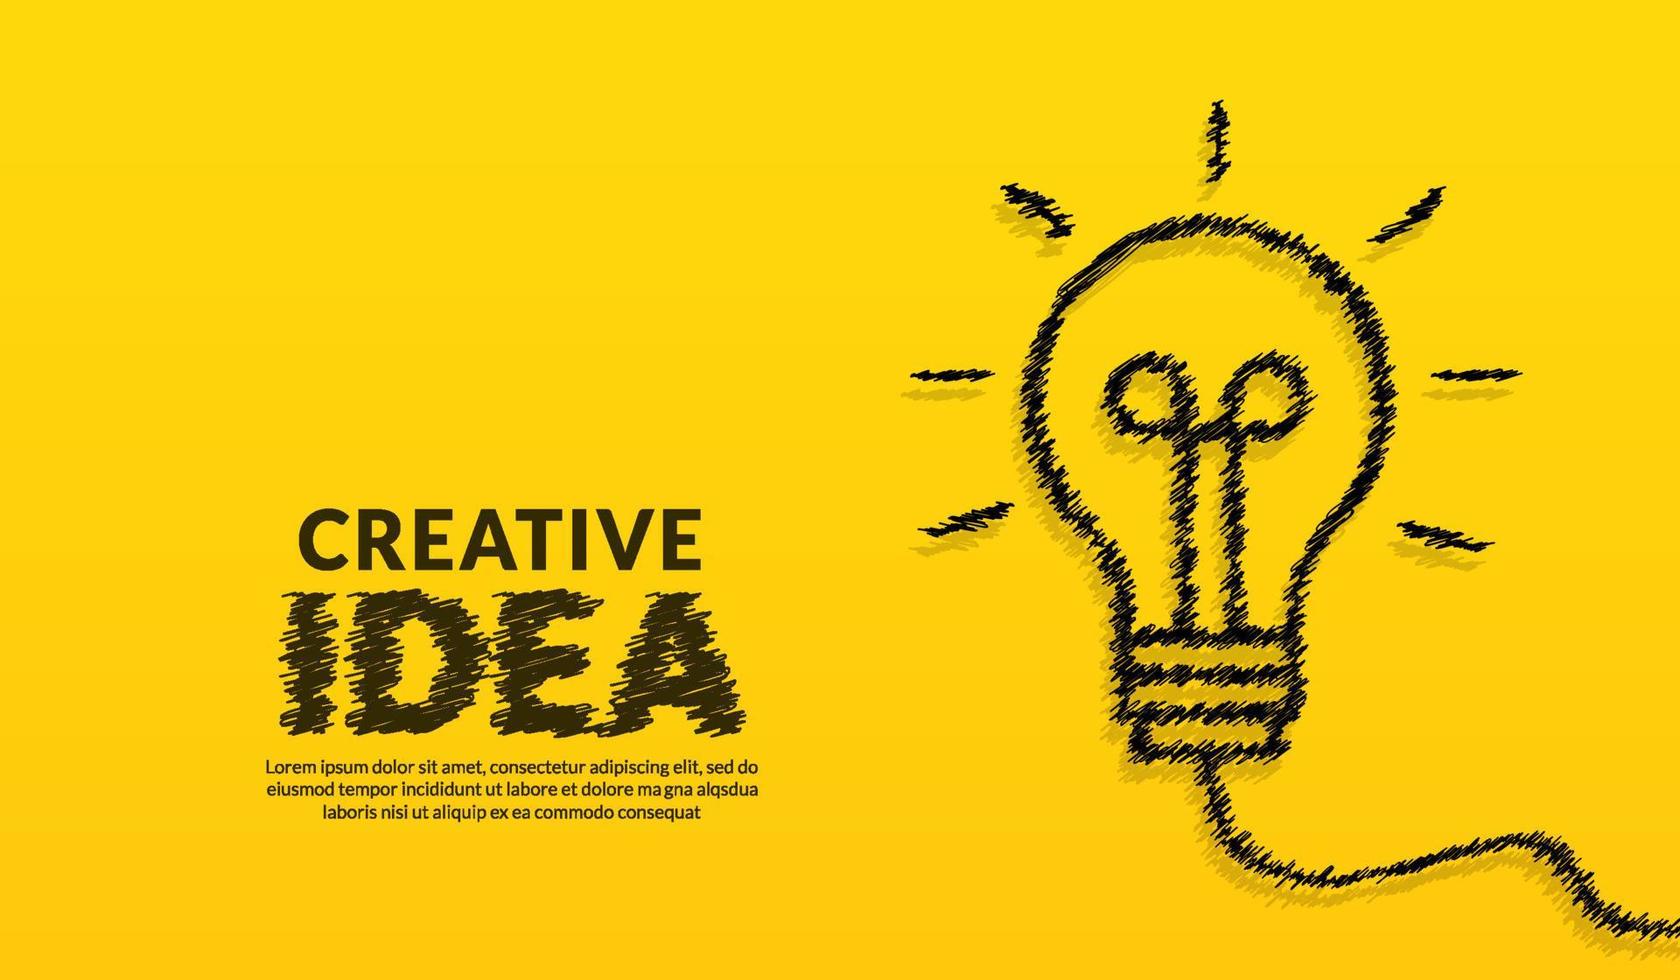 kreativa idékoncept med doodle glödlampa och typografibokstäver av idé på gul bakgrund, inspiration, innovation, kreativitet vektor